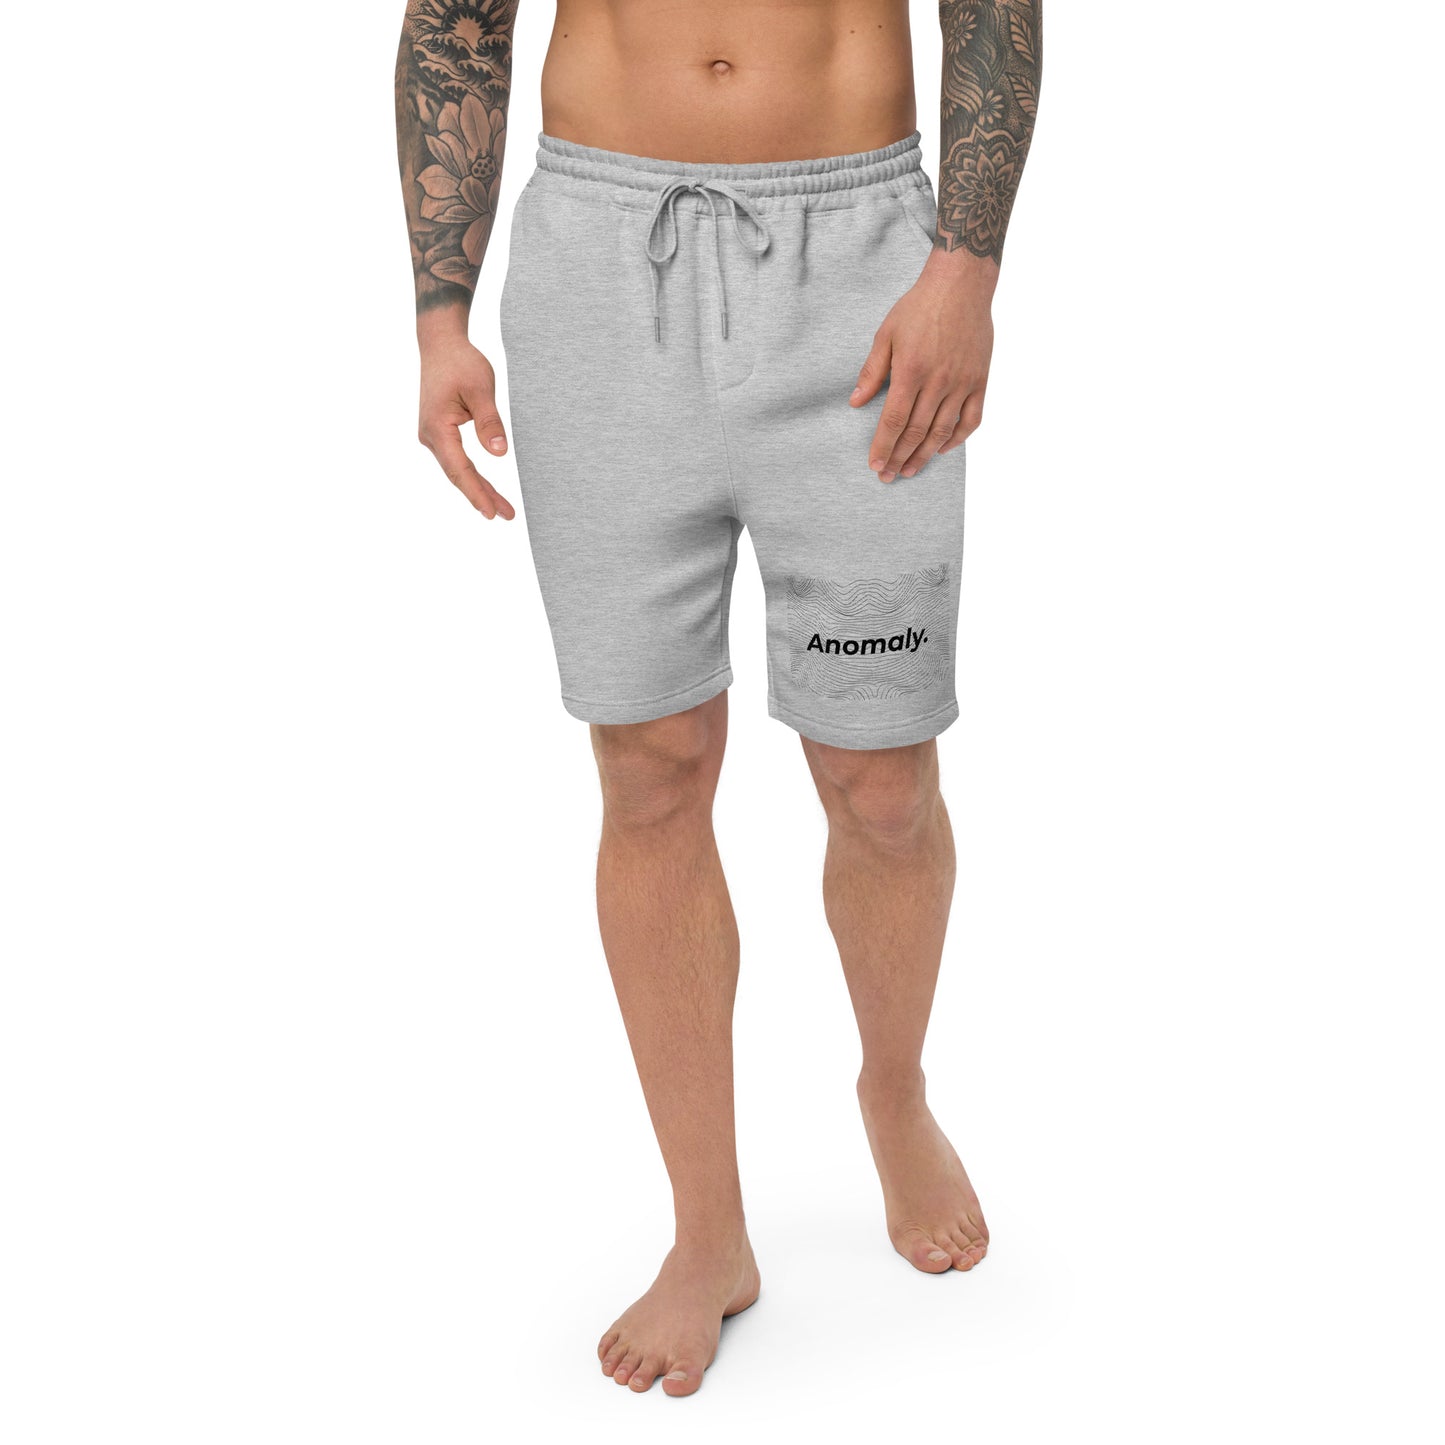 Anomaly fleece shorts